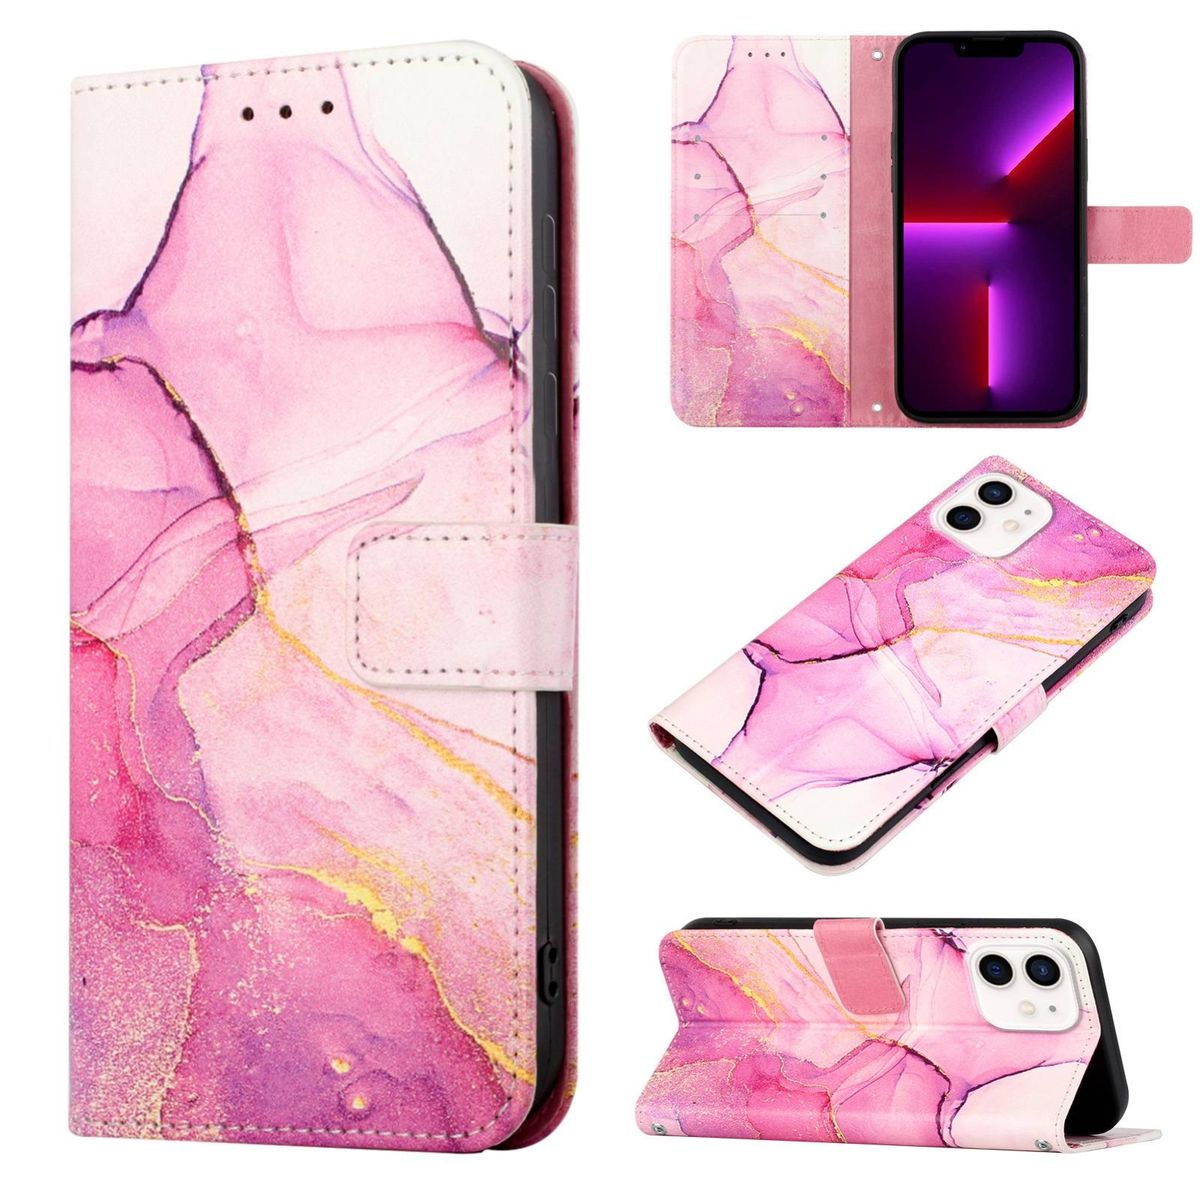 König Design Schutz Handy Hülle für Apple iPhone 12 Mini Case Cover Tasche Wallet 360 Grad Etuis